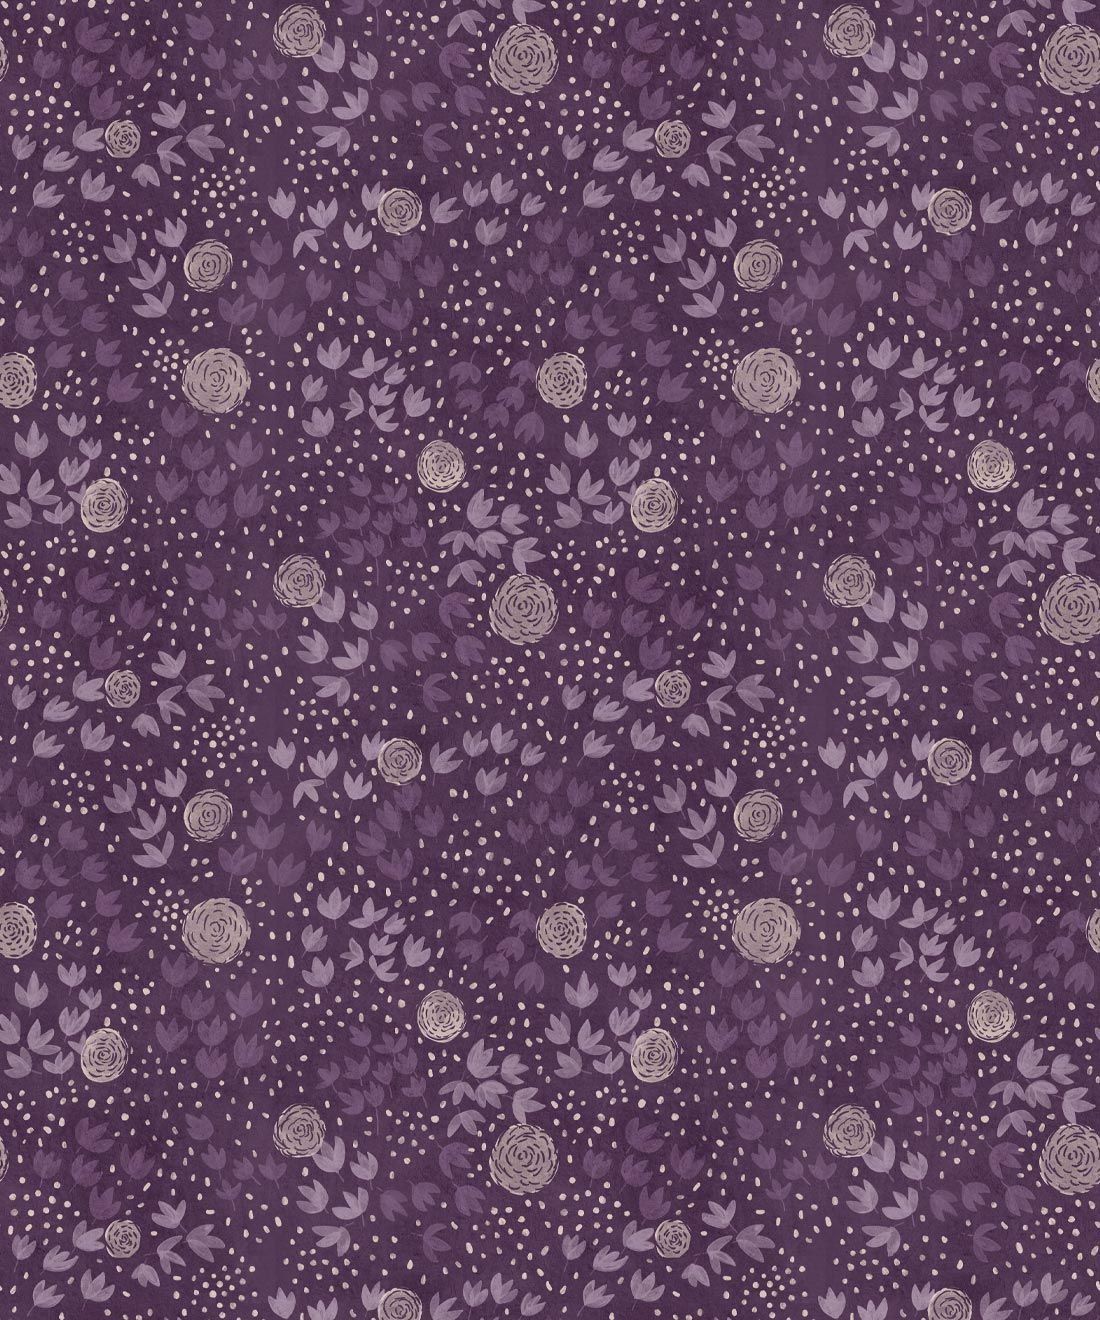 Dainty Wallpaper • Floral Wallpaper • Purple • Swatch